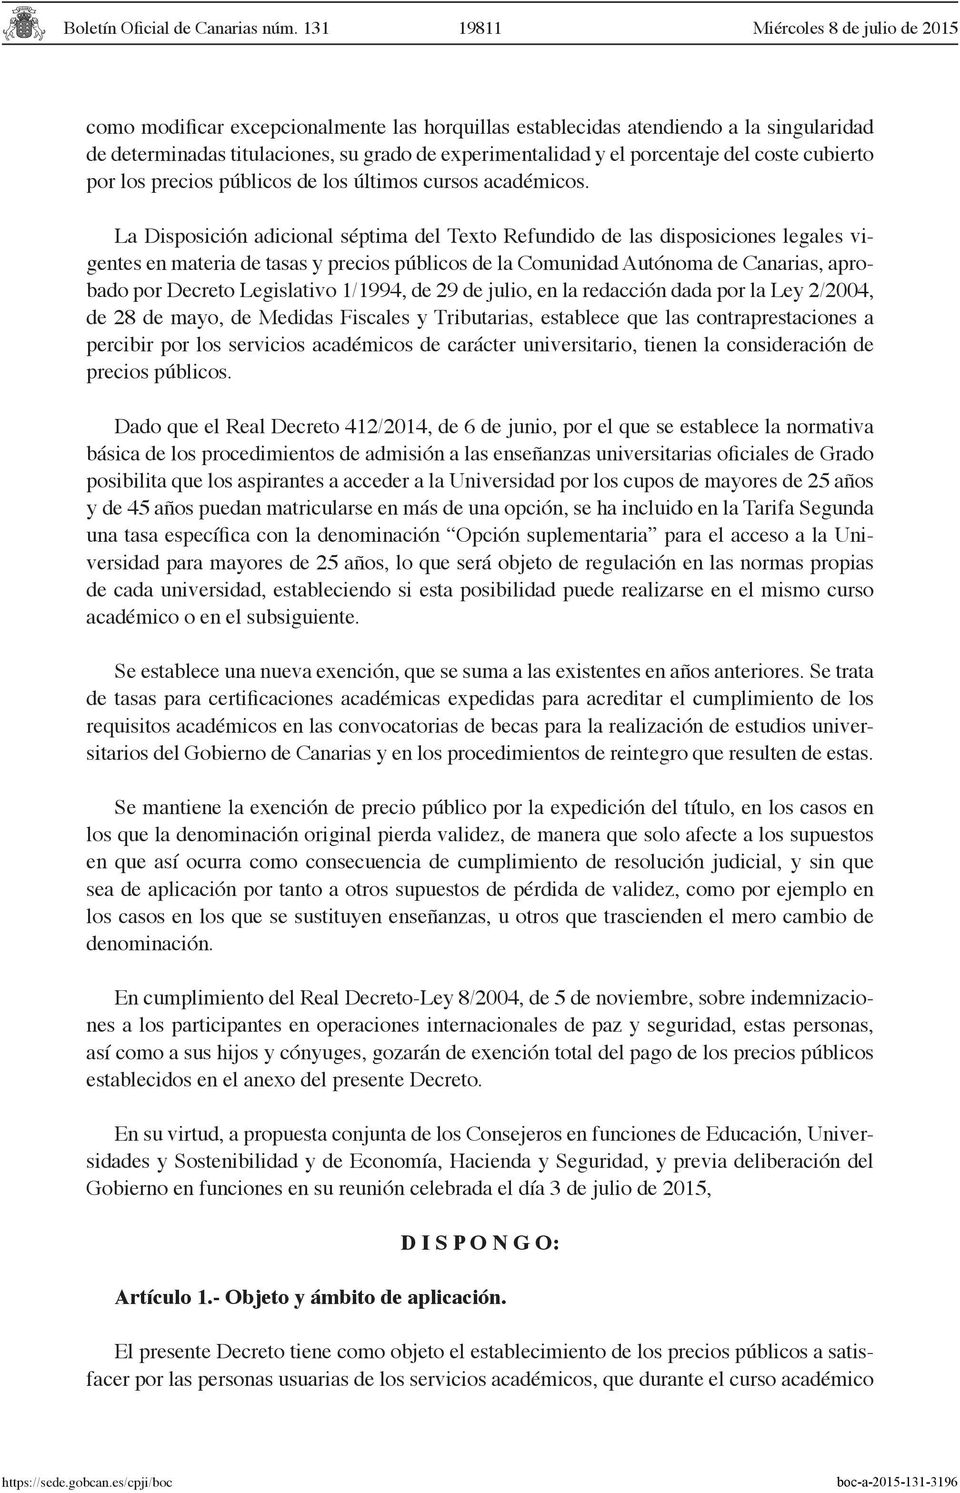 La Disposición adicional séptima del Texto Refundido de las disposiciones legales vigentes en materia de tasas y precios públicos de la Comunidad Autónoma de Canarias, aprobado por Decreto